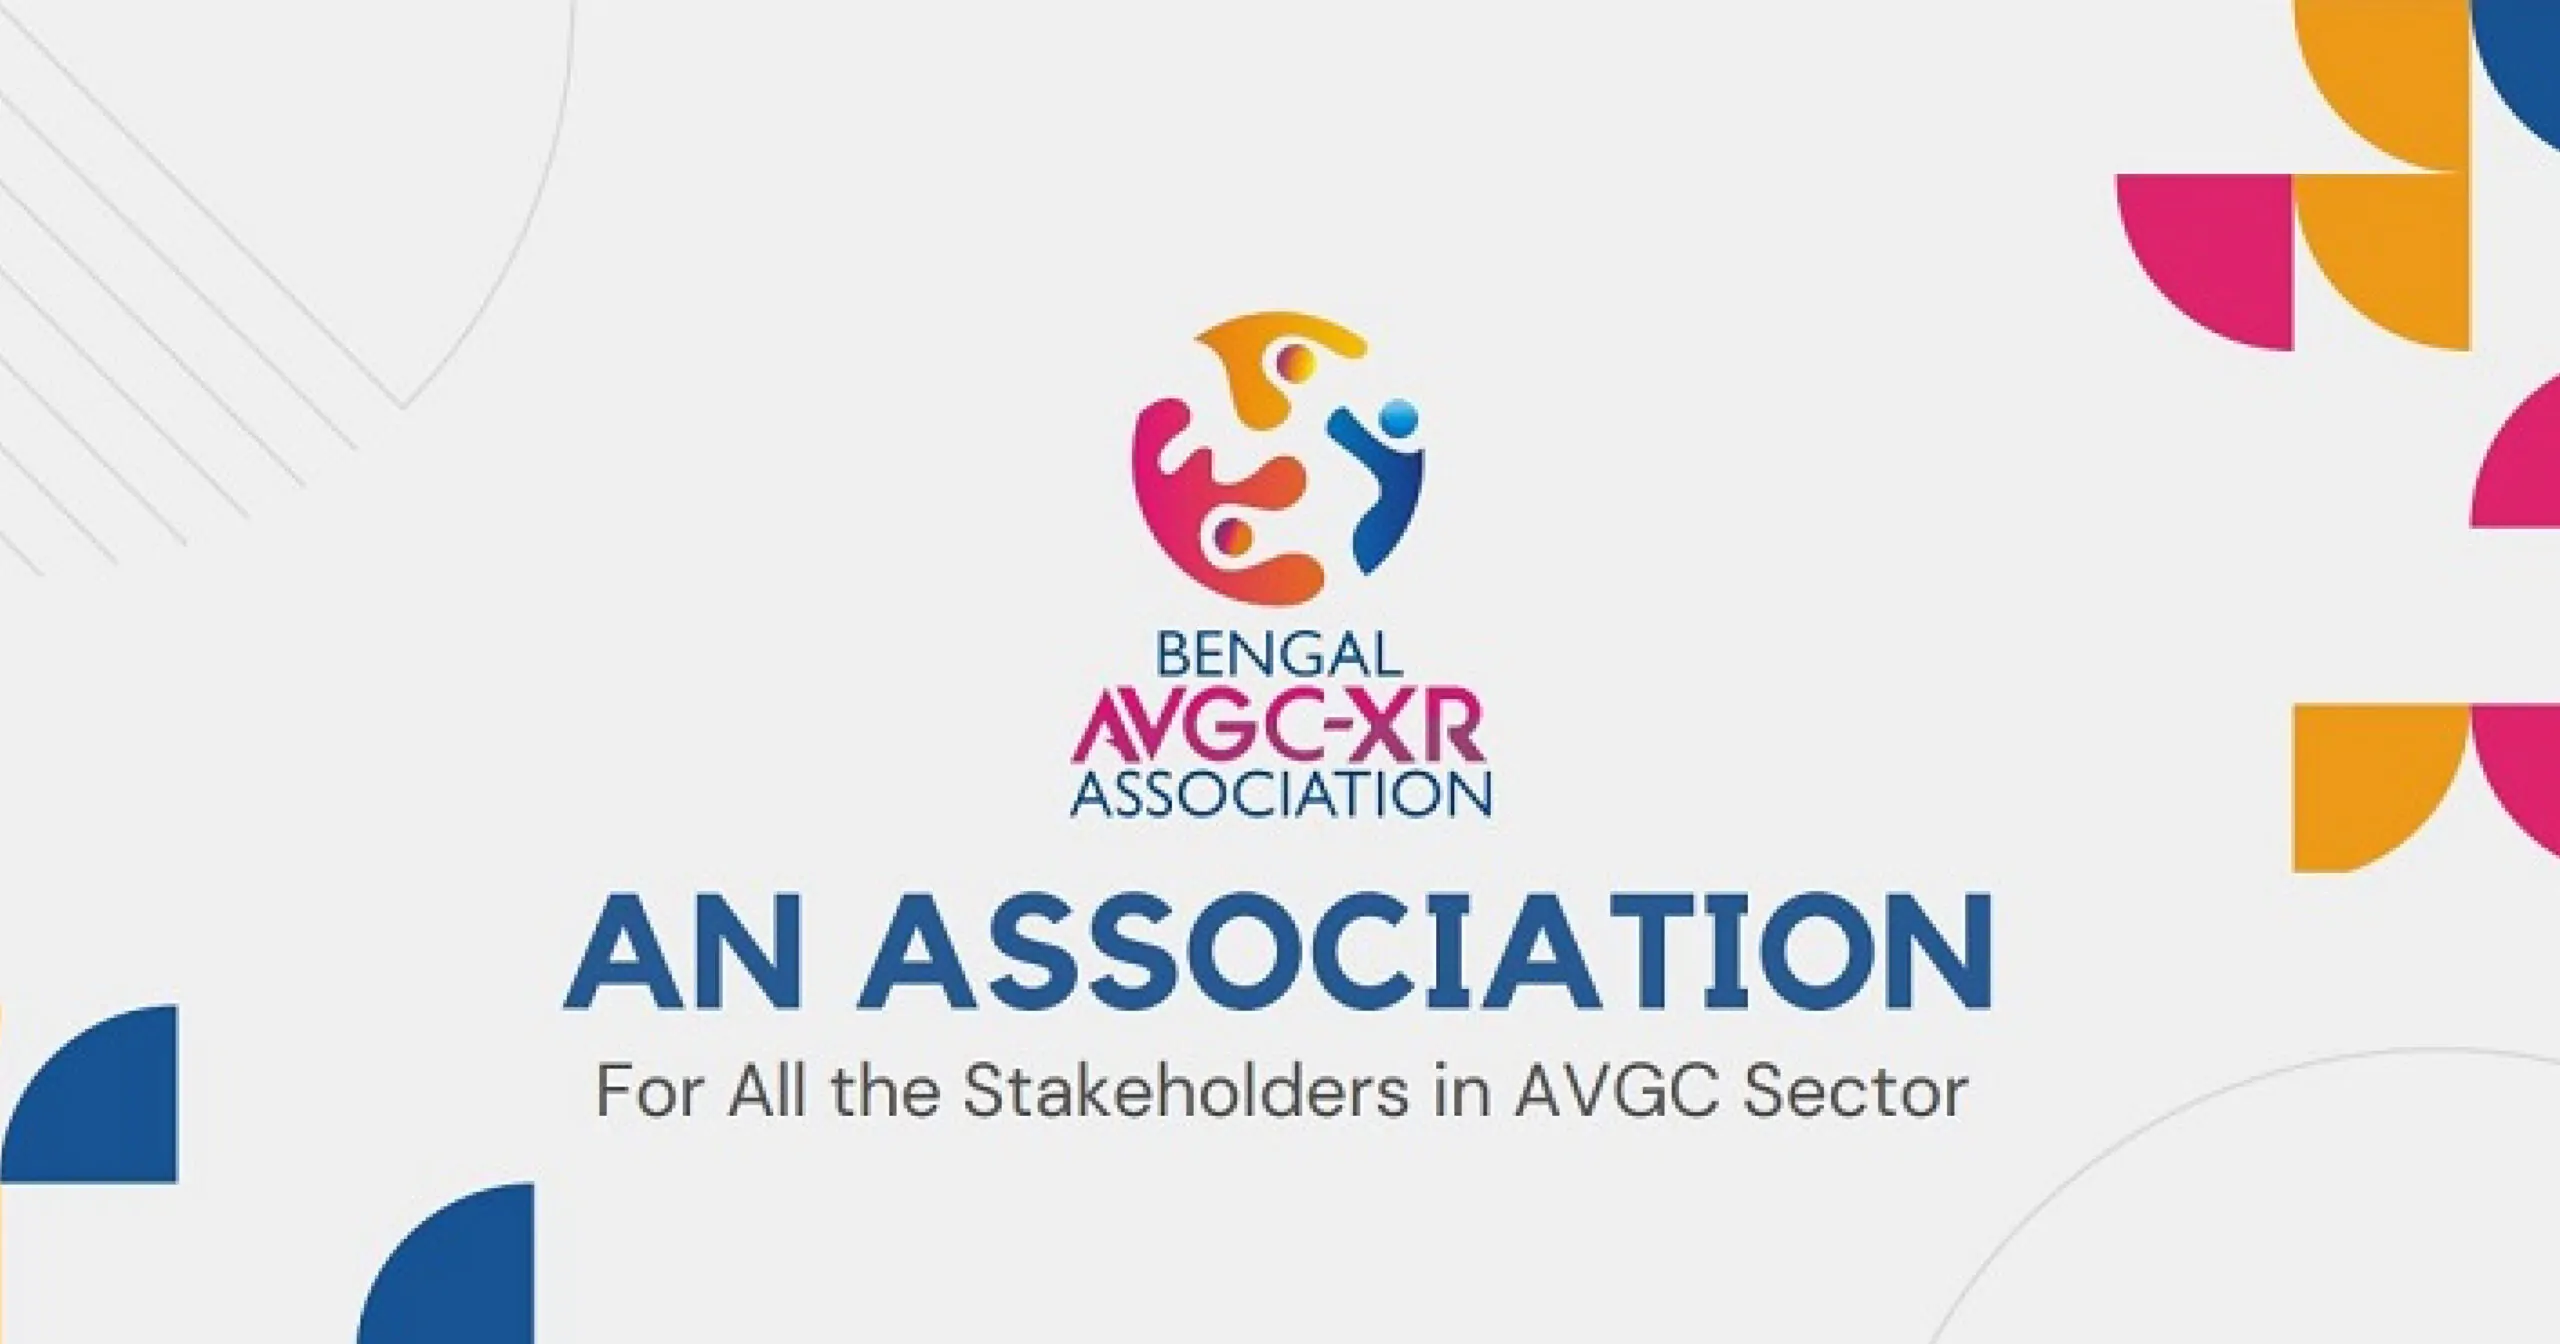 Bengal AVGC-XR Association